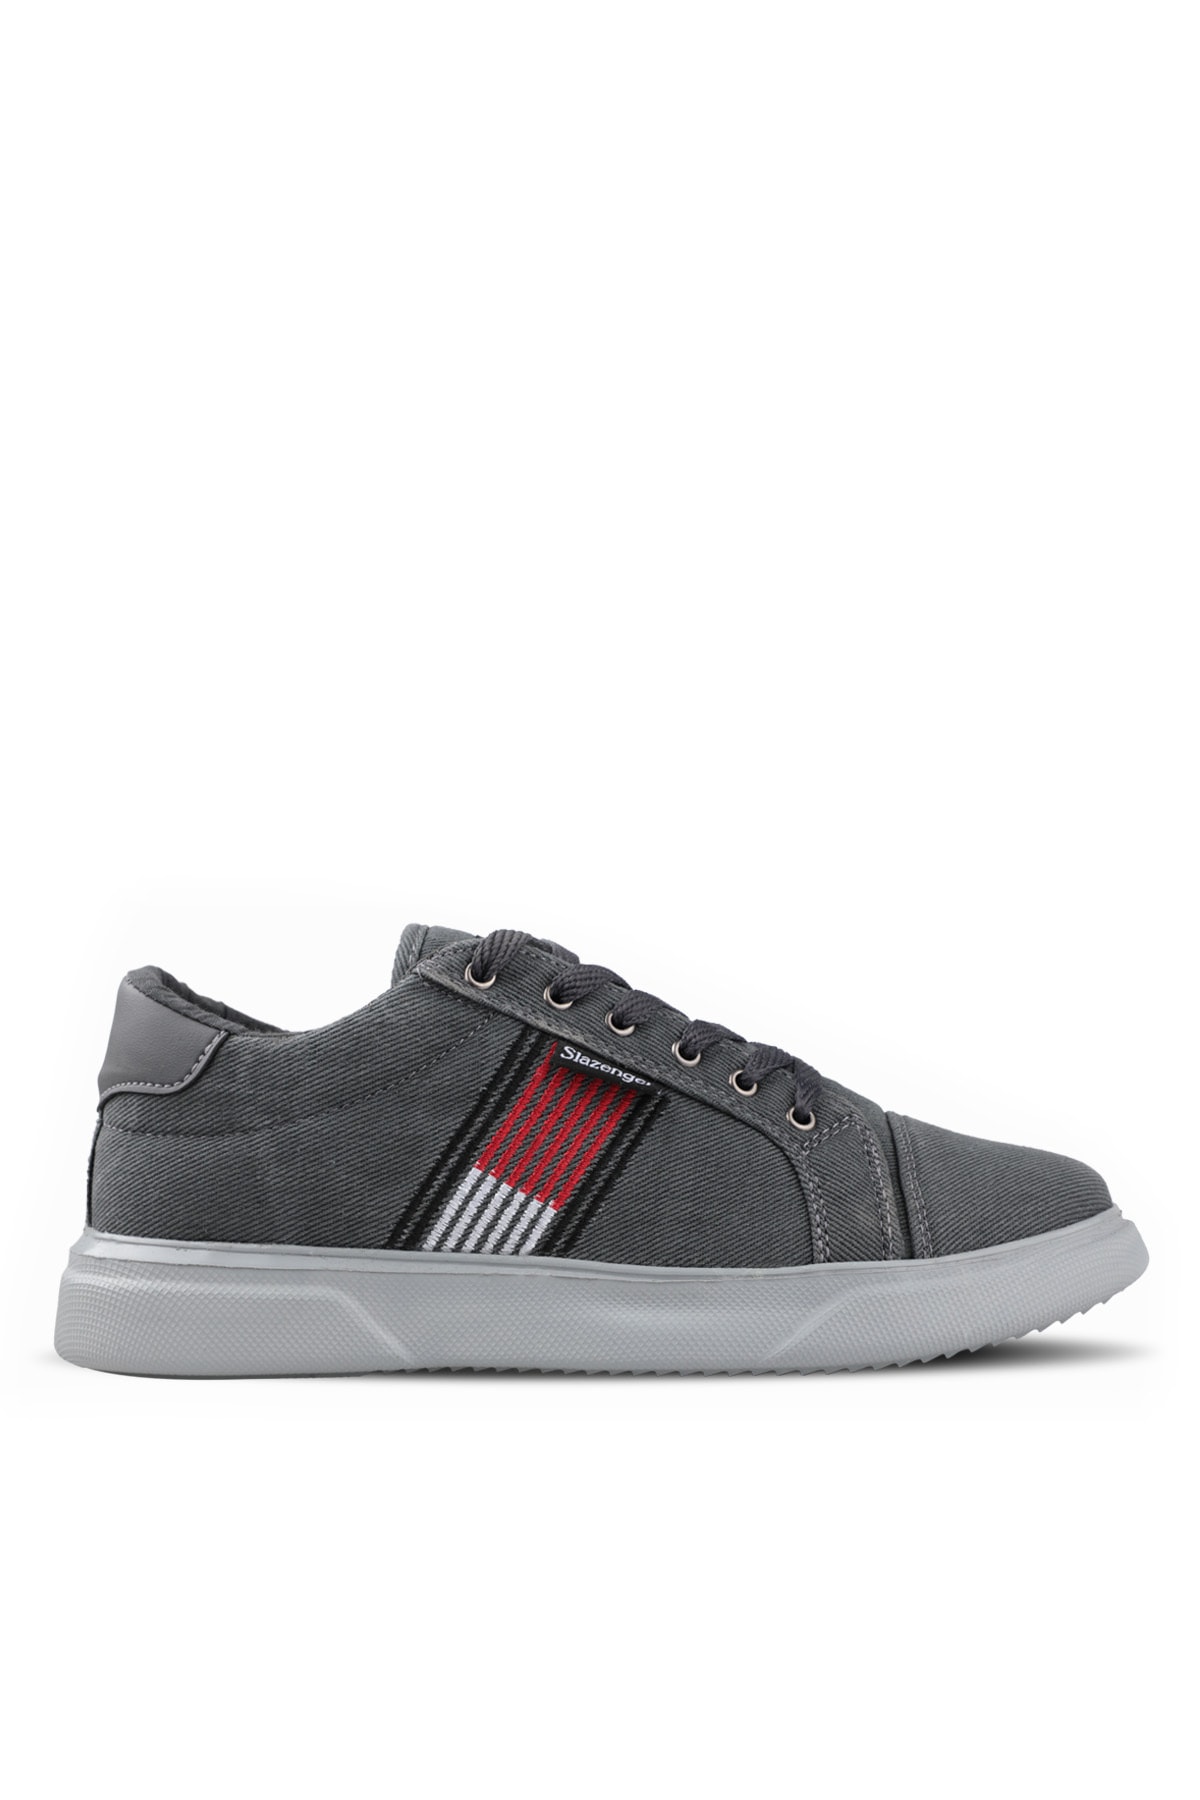 Levně Slazenger Daly Sneaker Men's Shoes Dark Gray